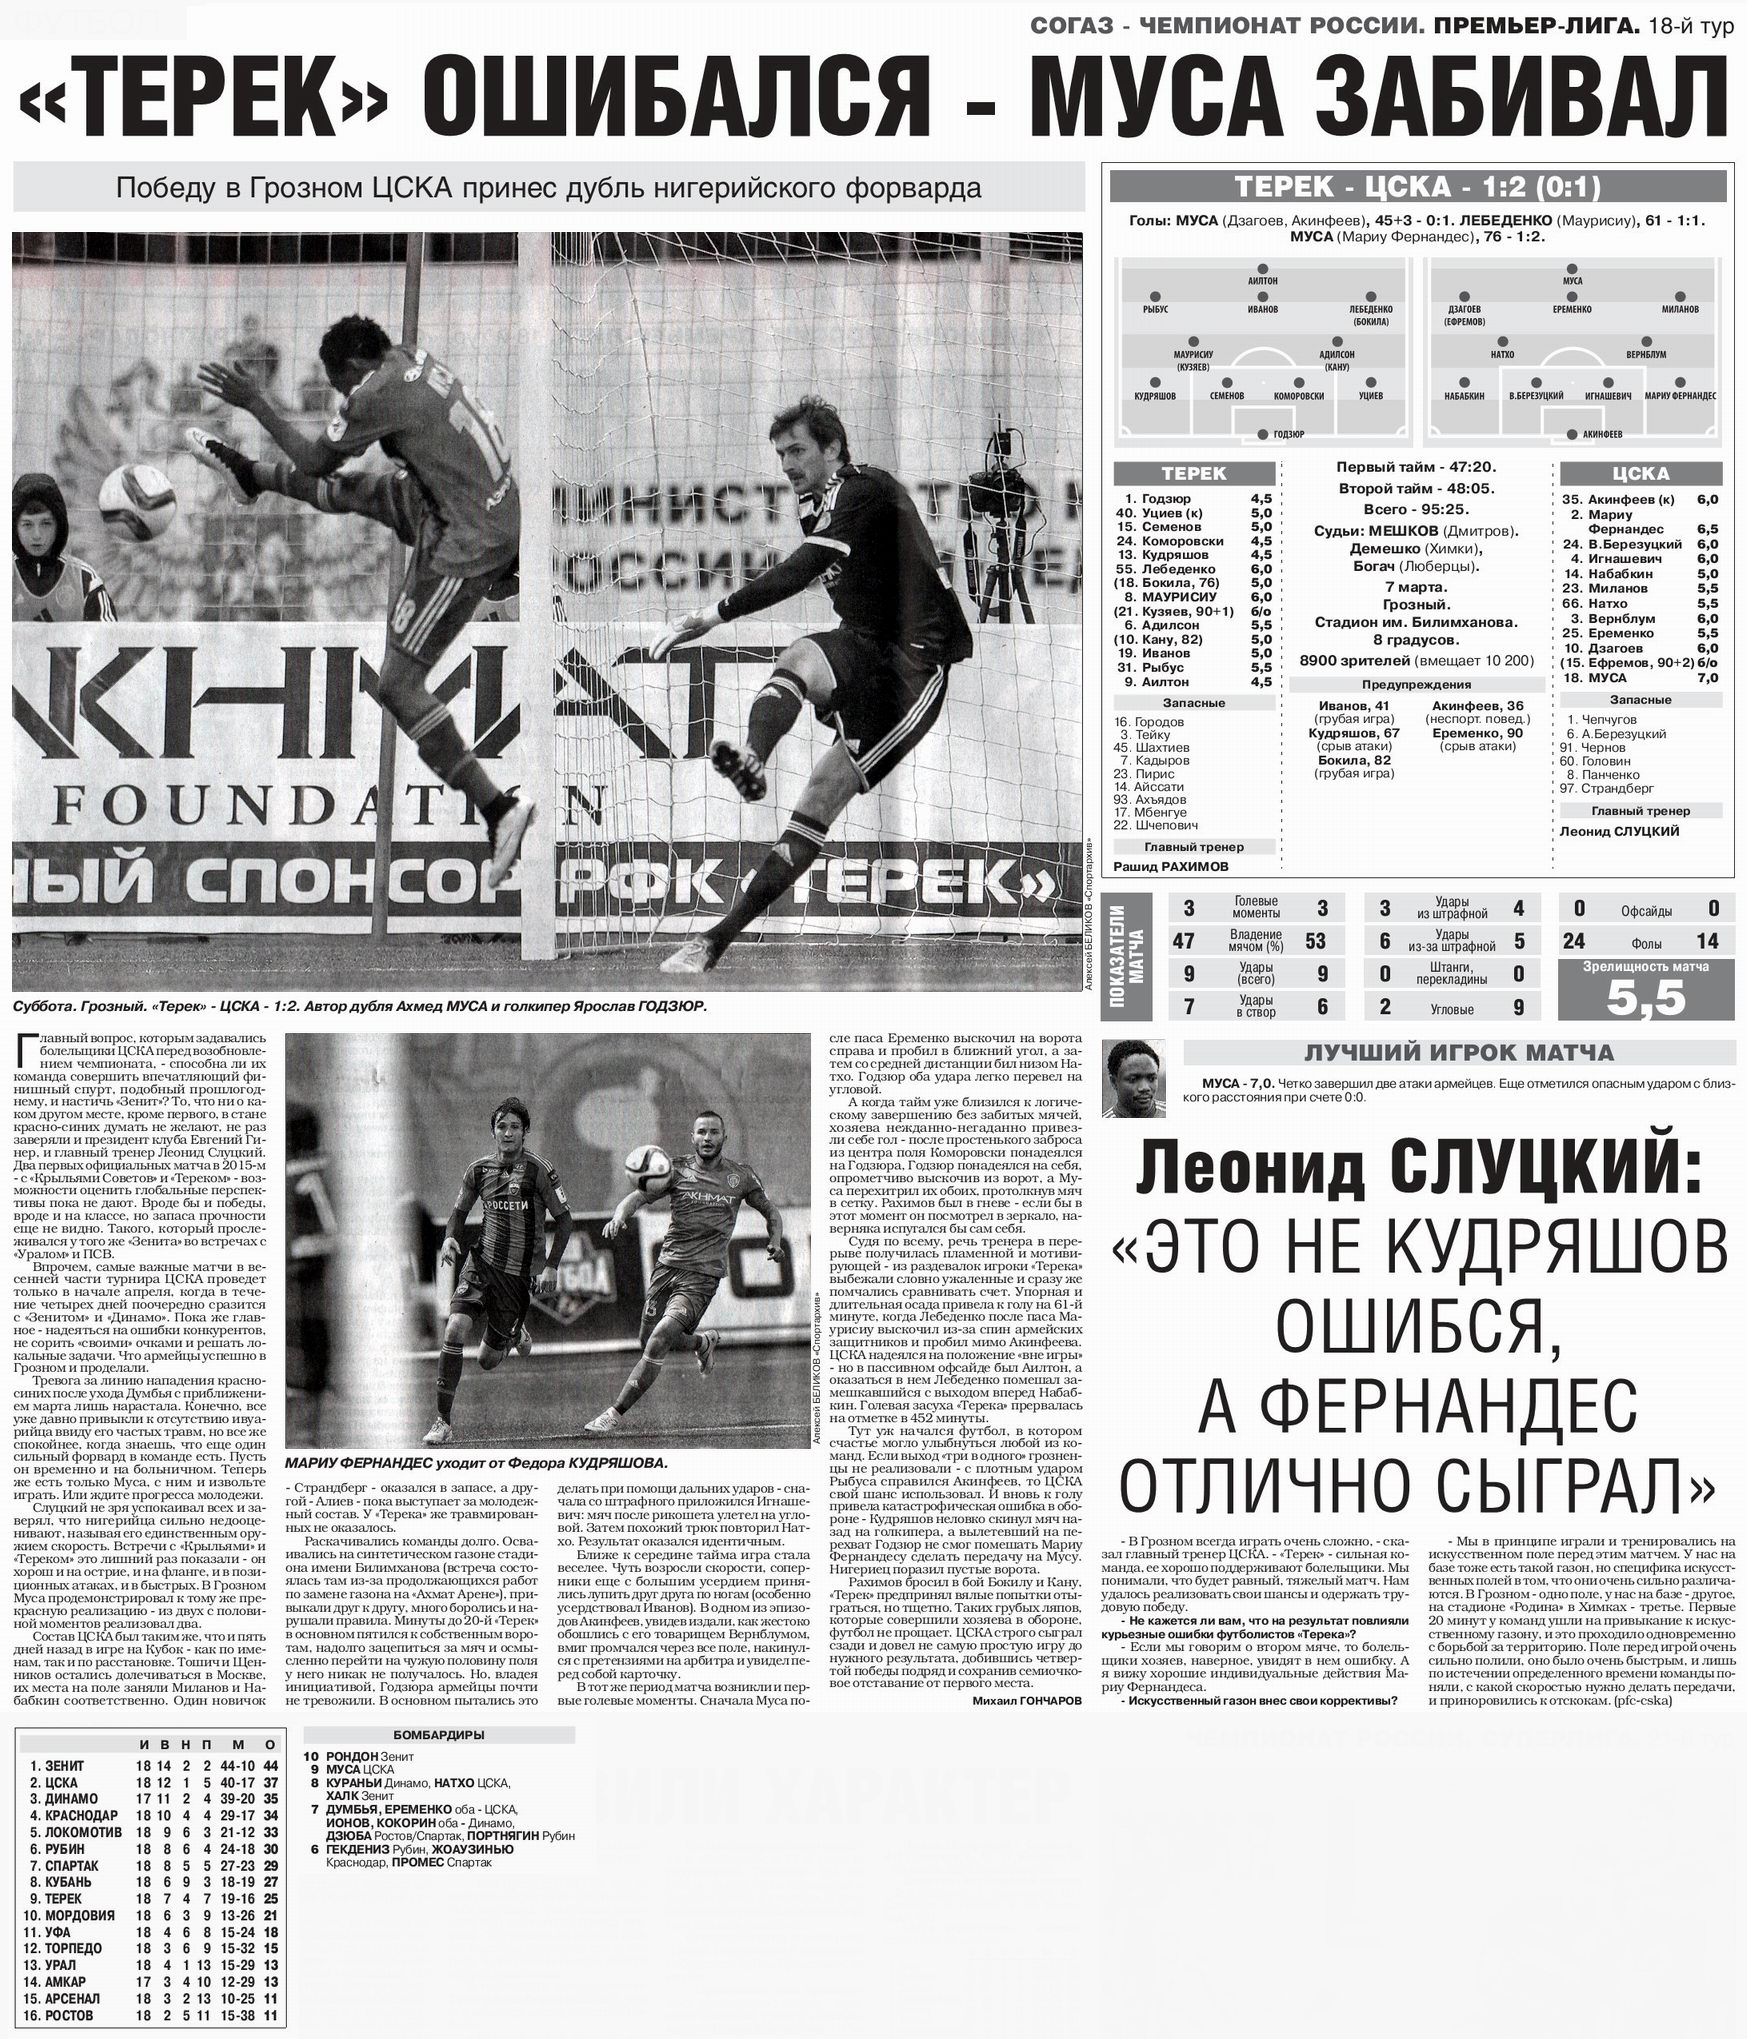 2015-03-07.Terek-CSKA